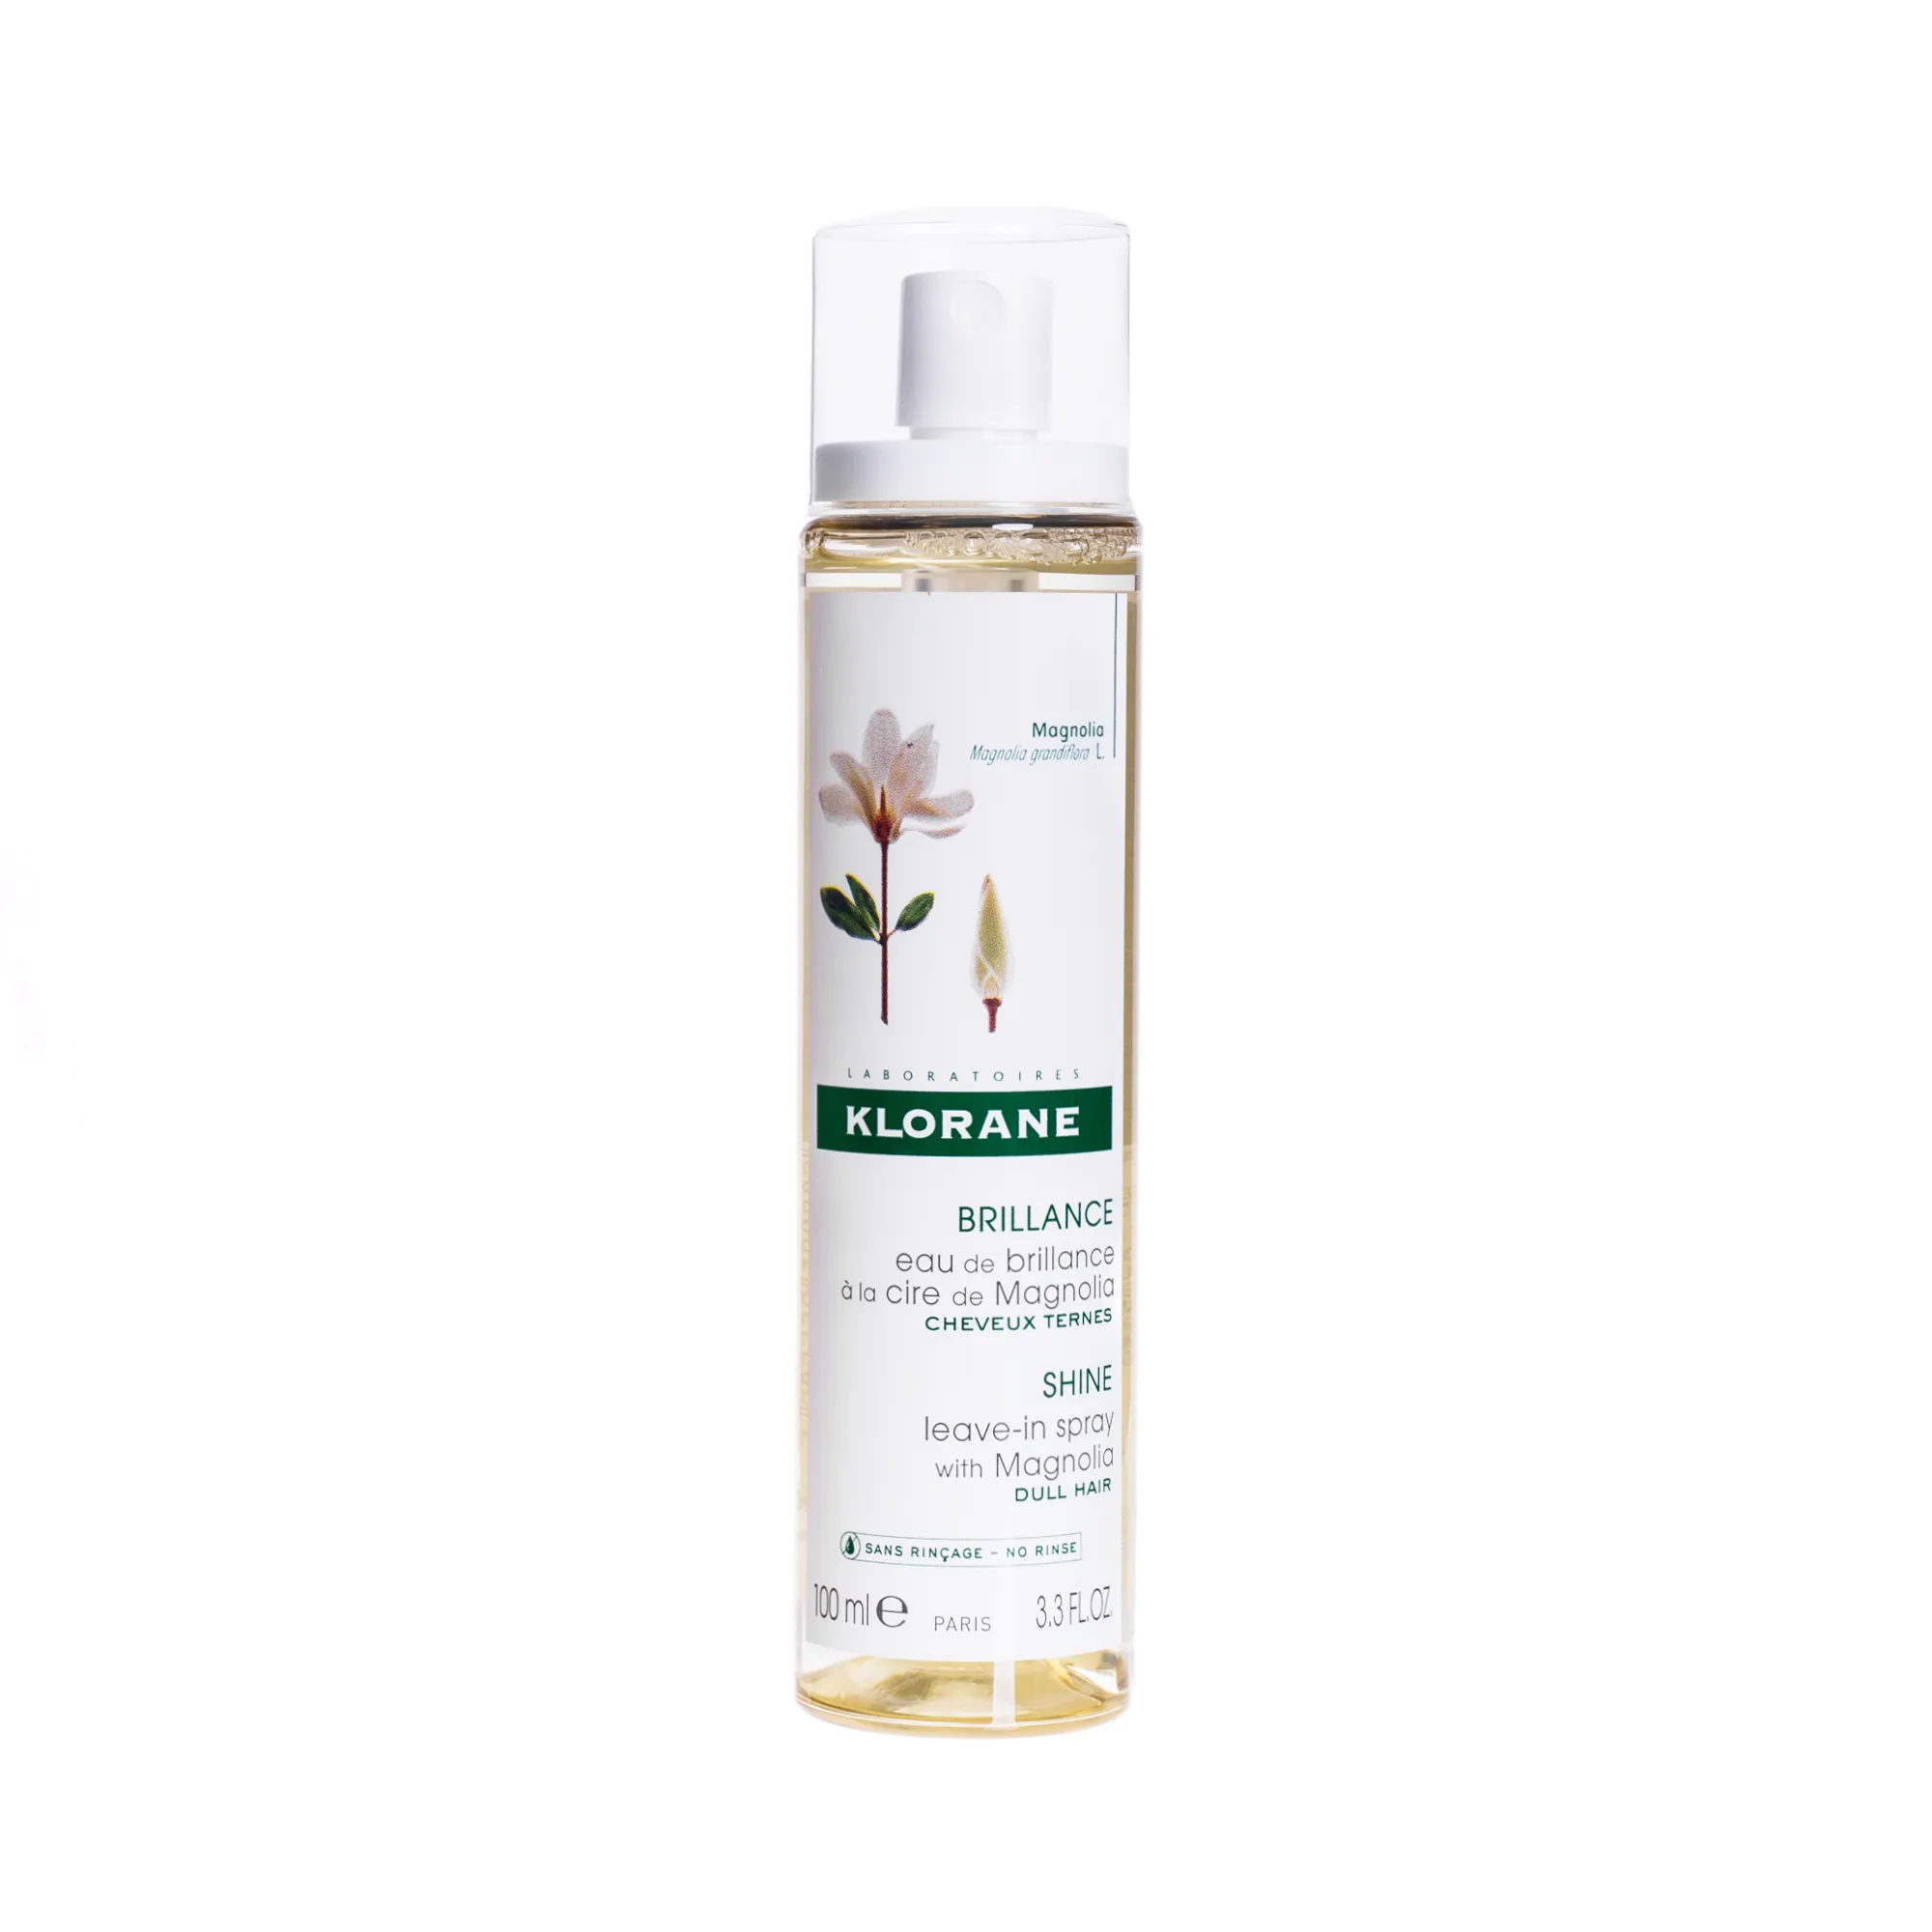 Klorane, nabłyszczający spray do włosów na bazie wosku z magnolii, 100 ml